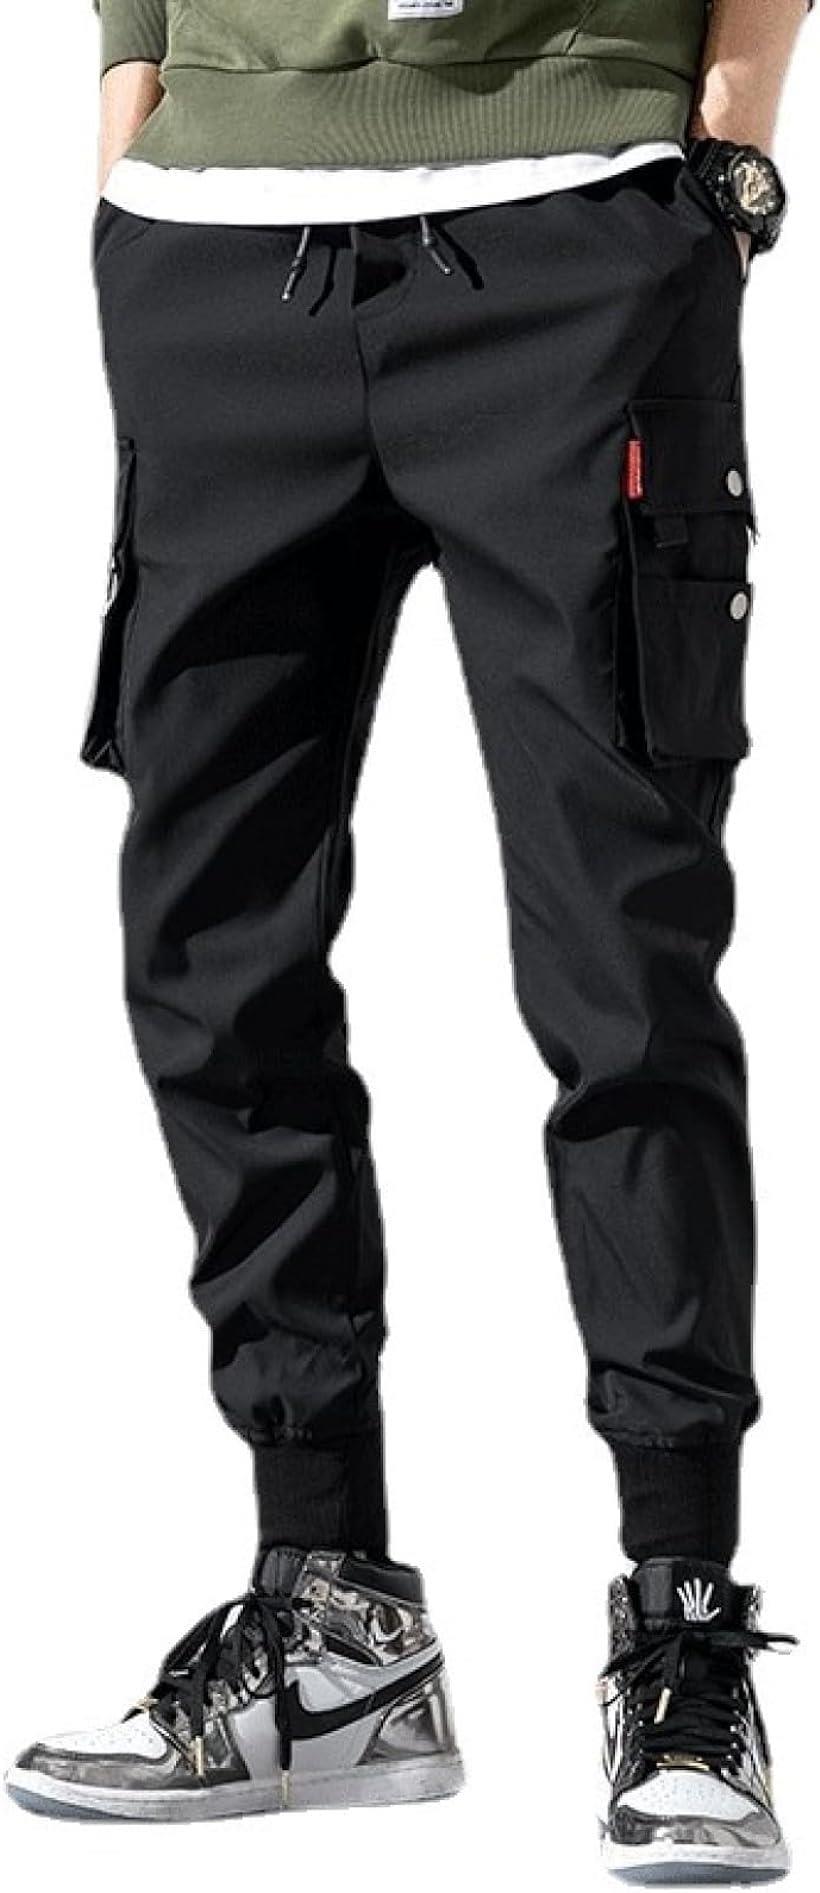 メンズ カーゴ クロップド パンツ 多い ポケット レギンス イージー 防寒( ブラック, 3XL)